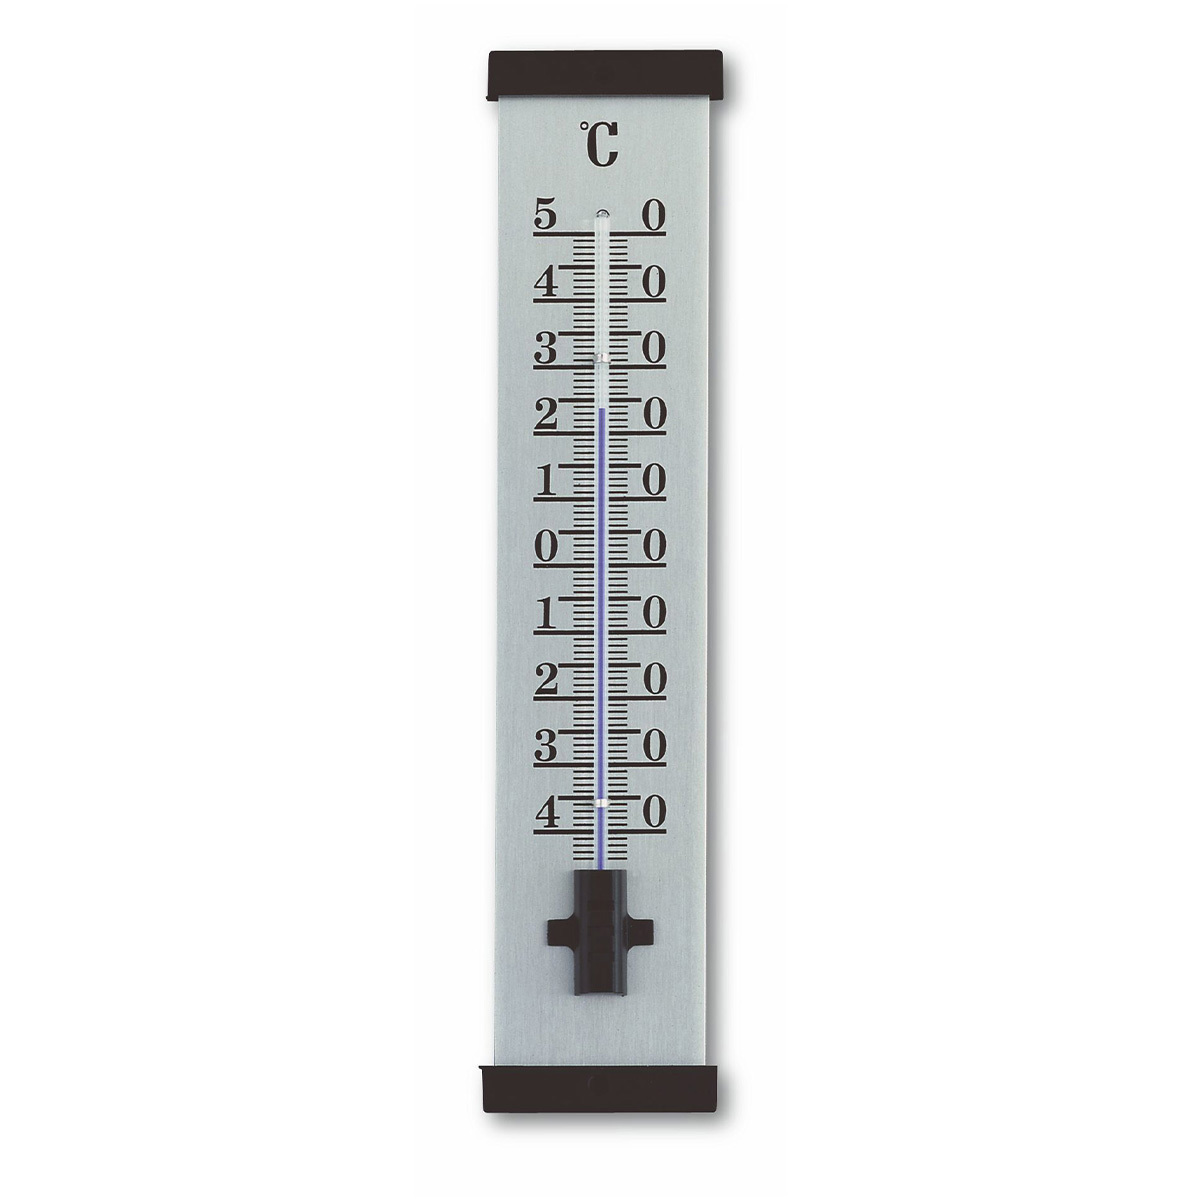 TFA Dostmann 12.1054 Termometro analogico per Interni ed Esterni, in Rovere